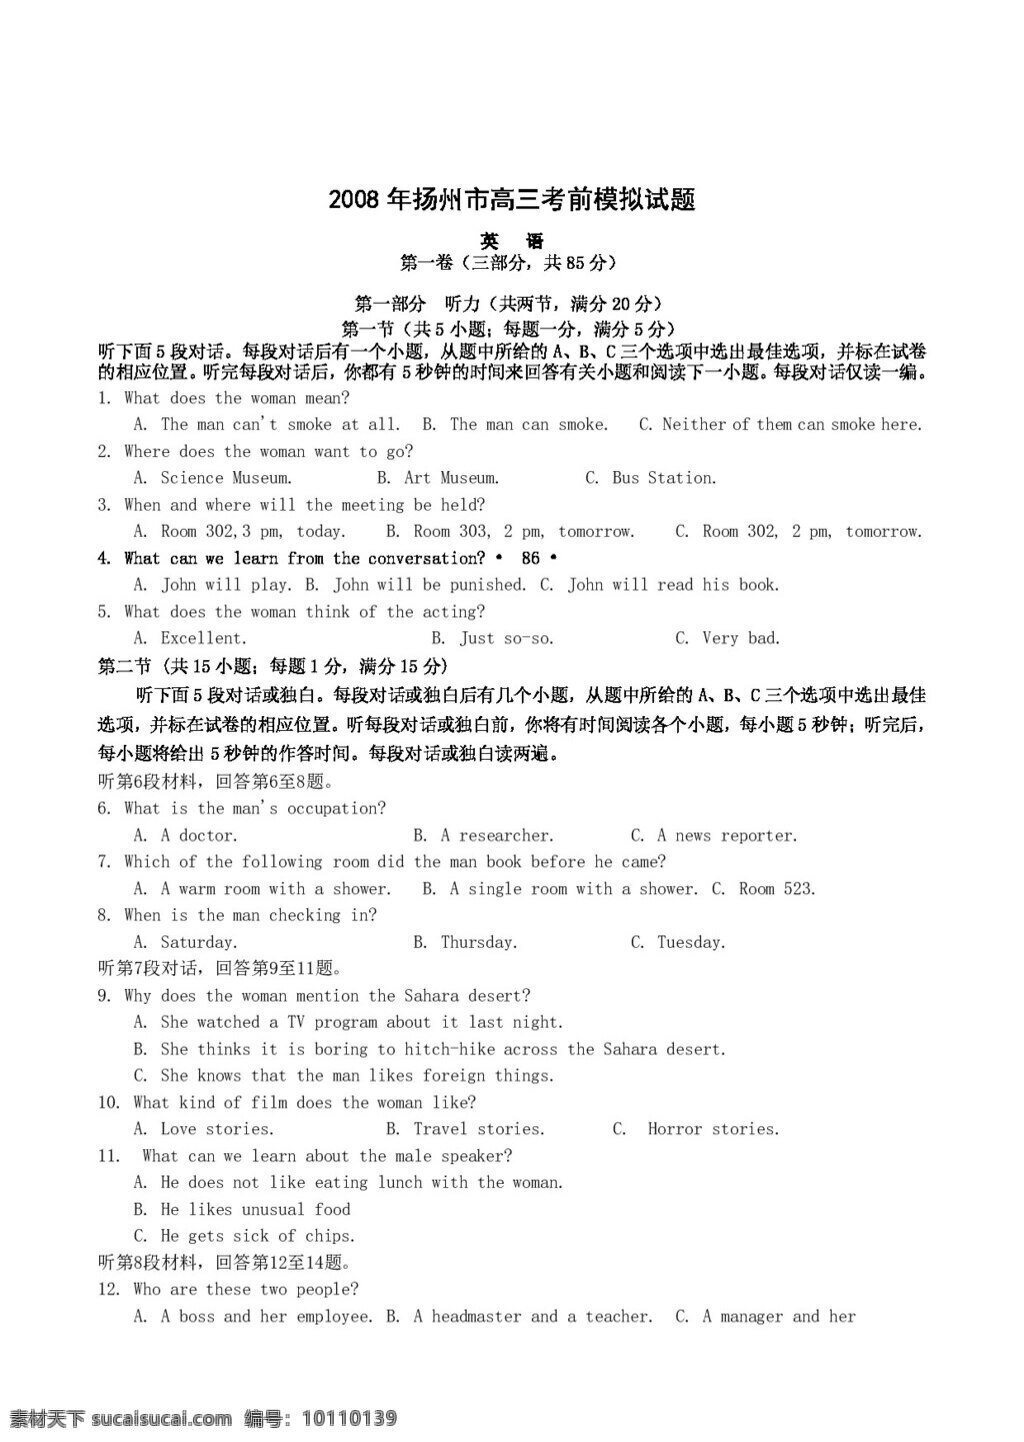 高考 专区 英语 江苏省 扬州市 高三 考前 模拟试题 高考专区 试卷